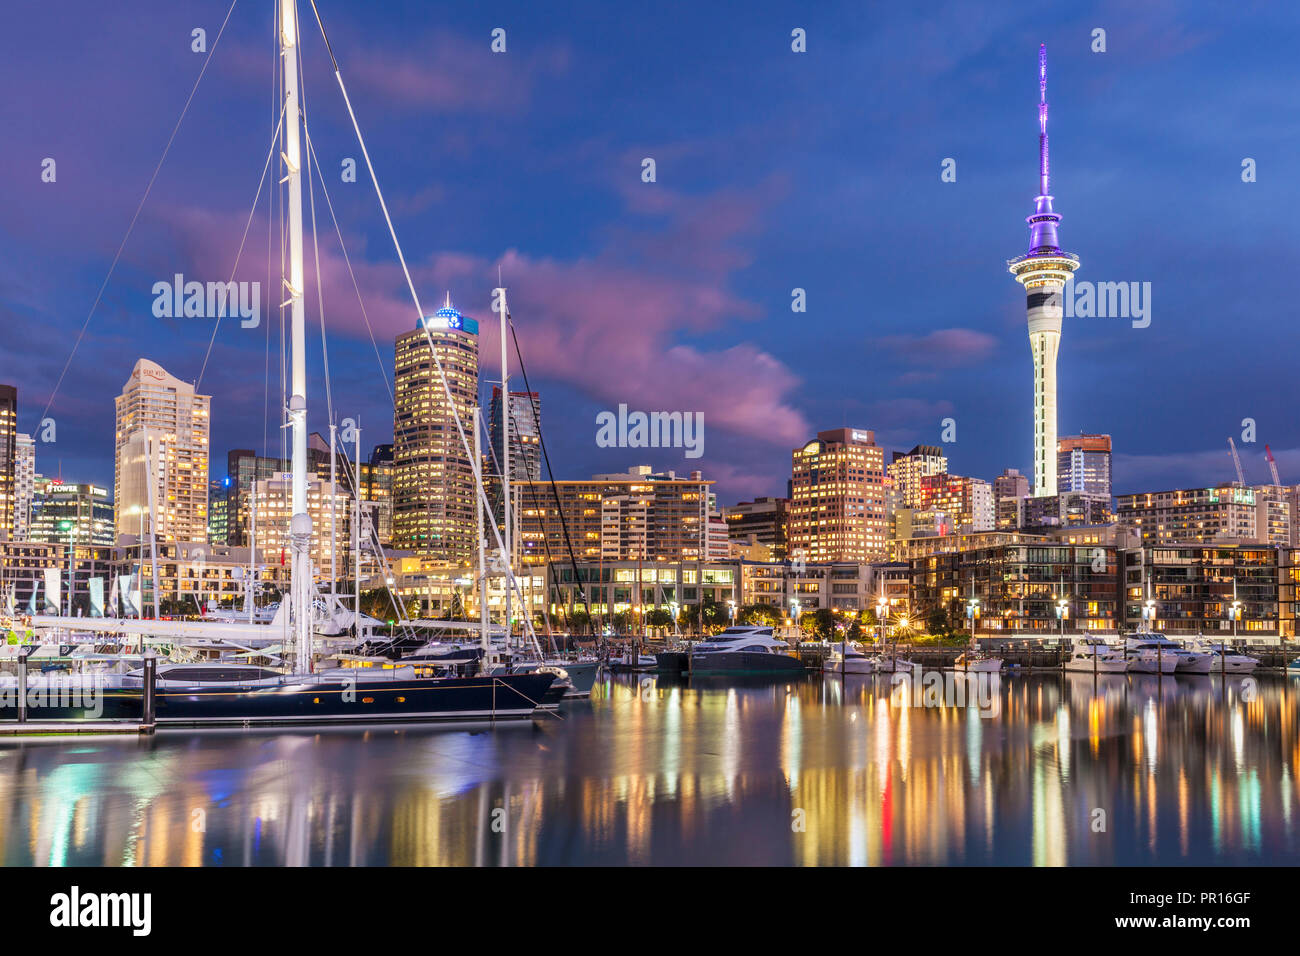 Viaduct Harbour Front de mer et port de plaisance à Auckland, Auckland skyline nuit, Sky Tower, Auckland, île du Nord, Nouvelle-Zélande, Pacifique Banque D'Images